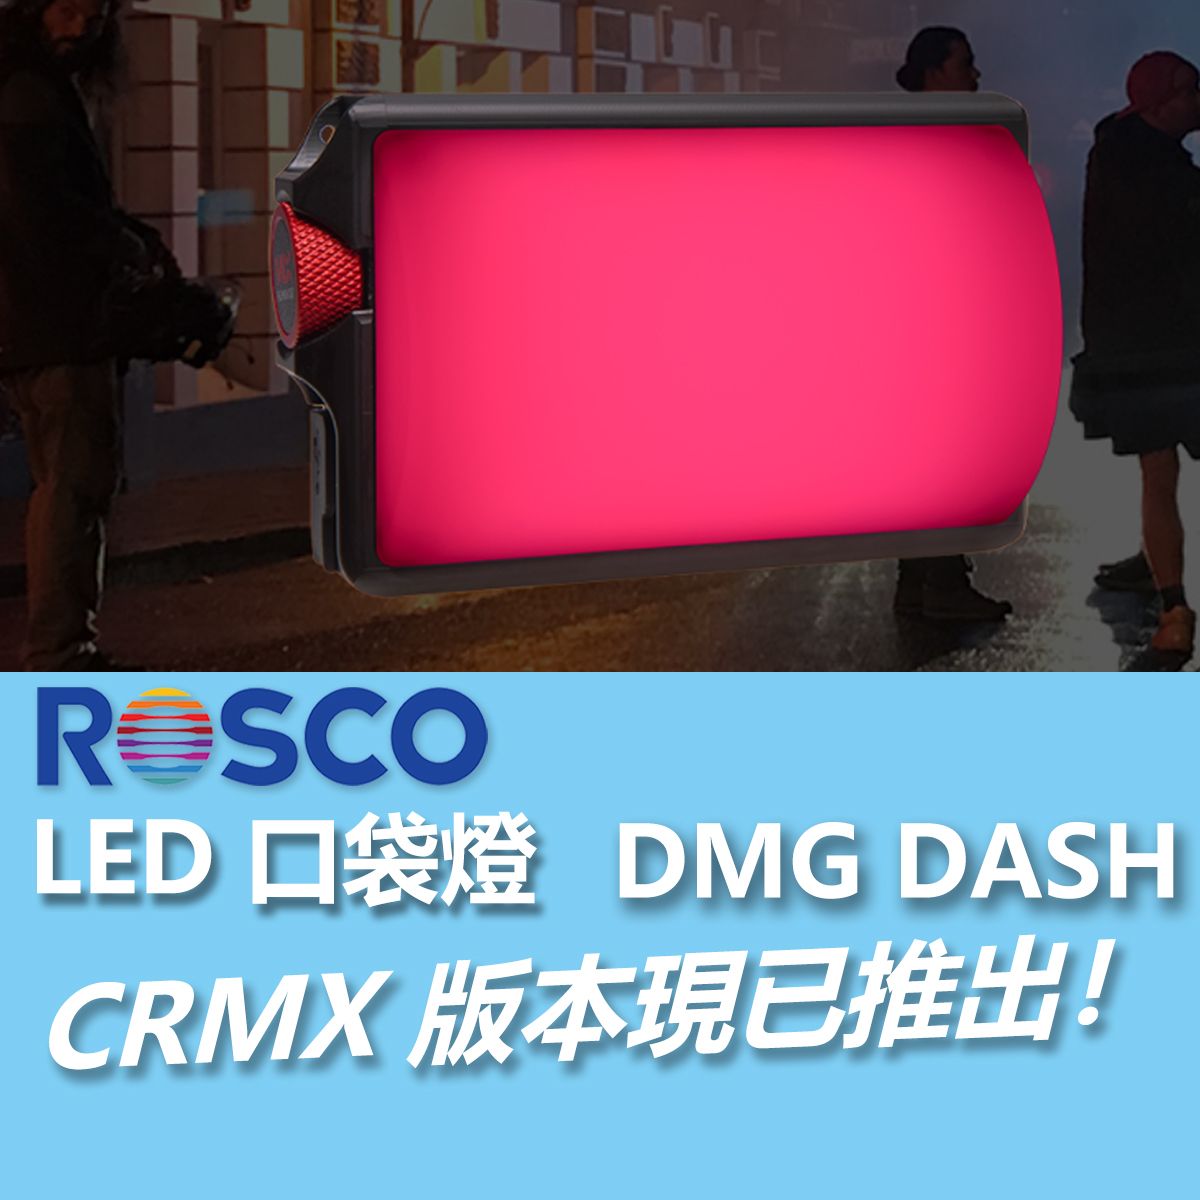 Rosco DMG DASH